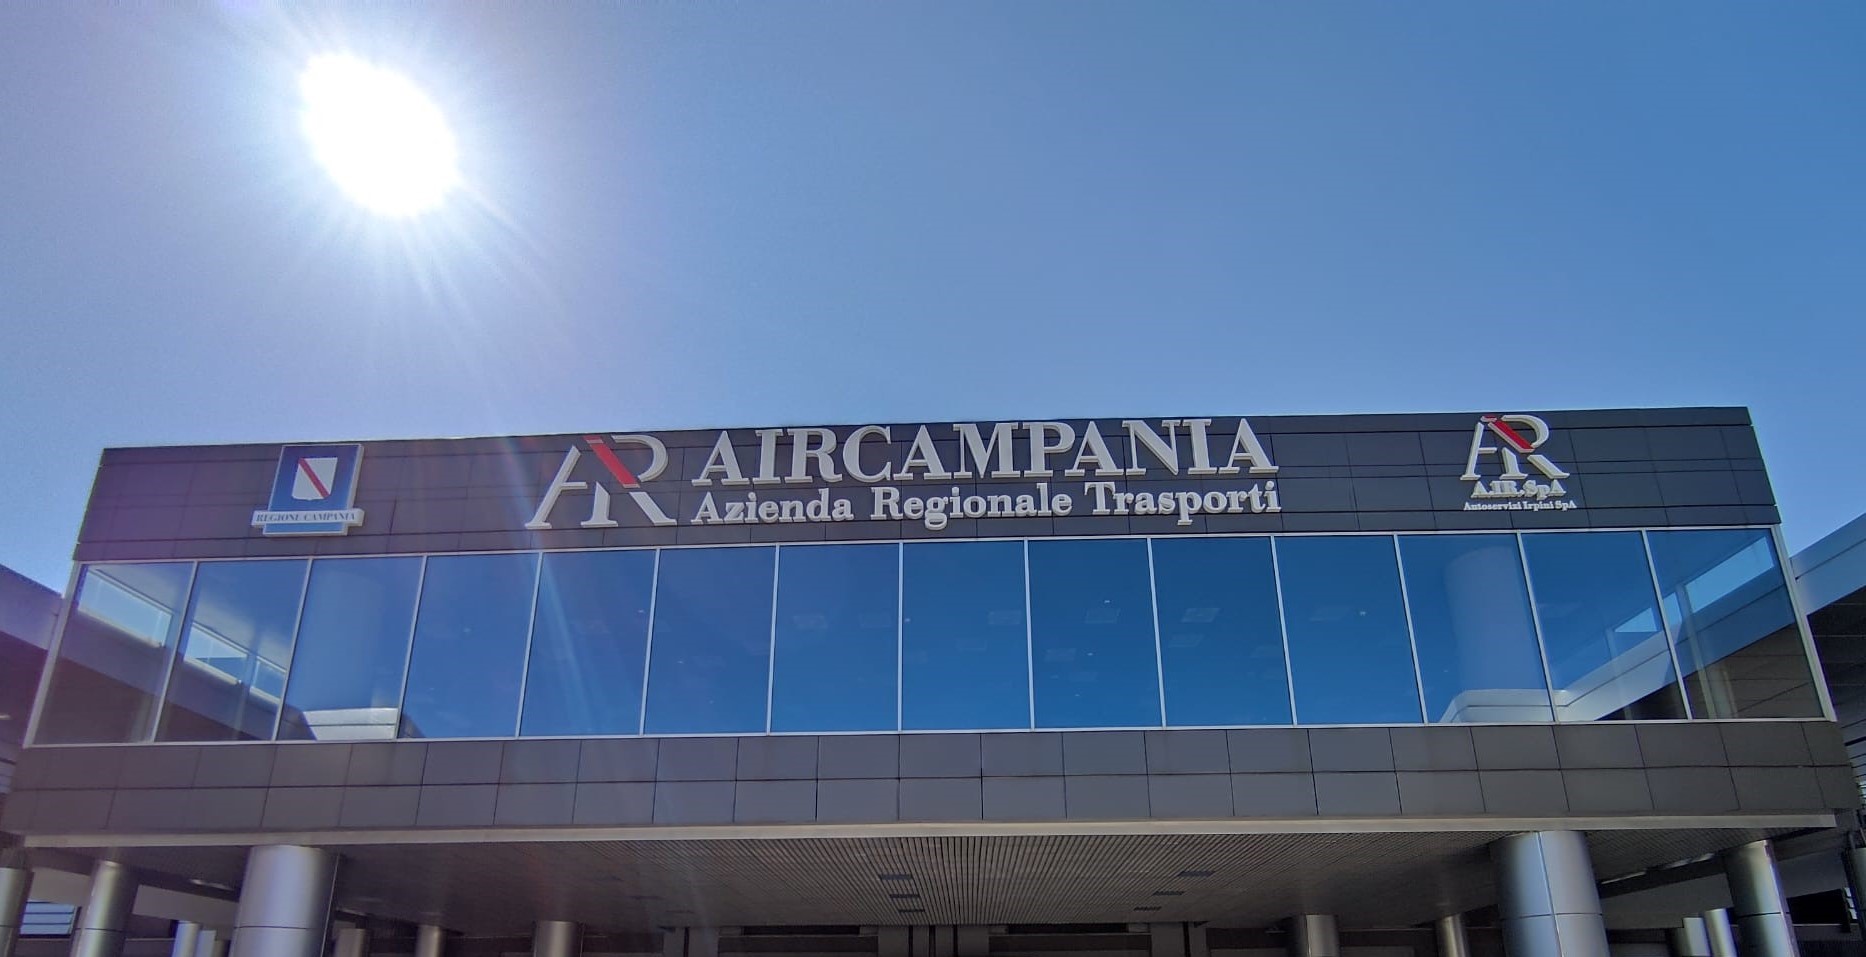 Air Campania prima per vendita biglietti su app. Da gennaio abbonamenti mensili solo in digitale